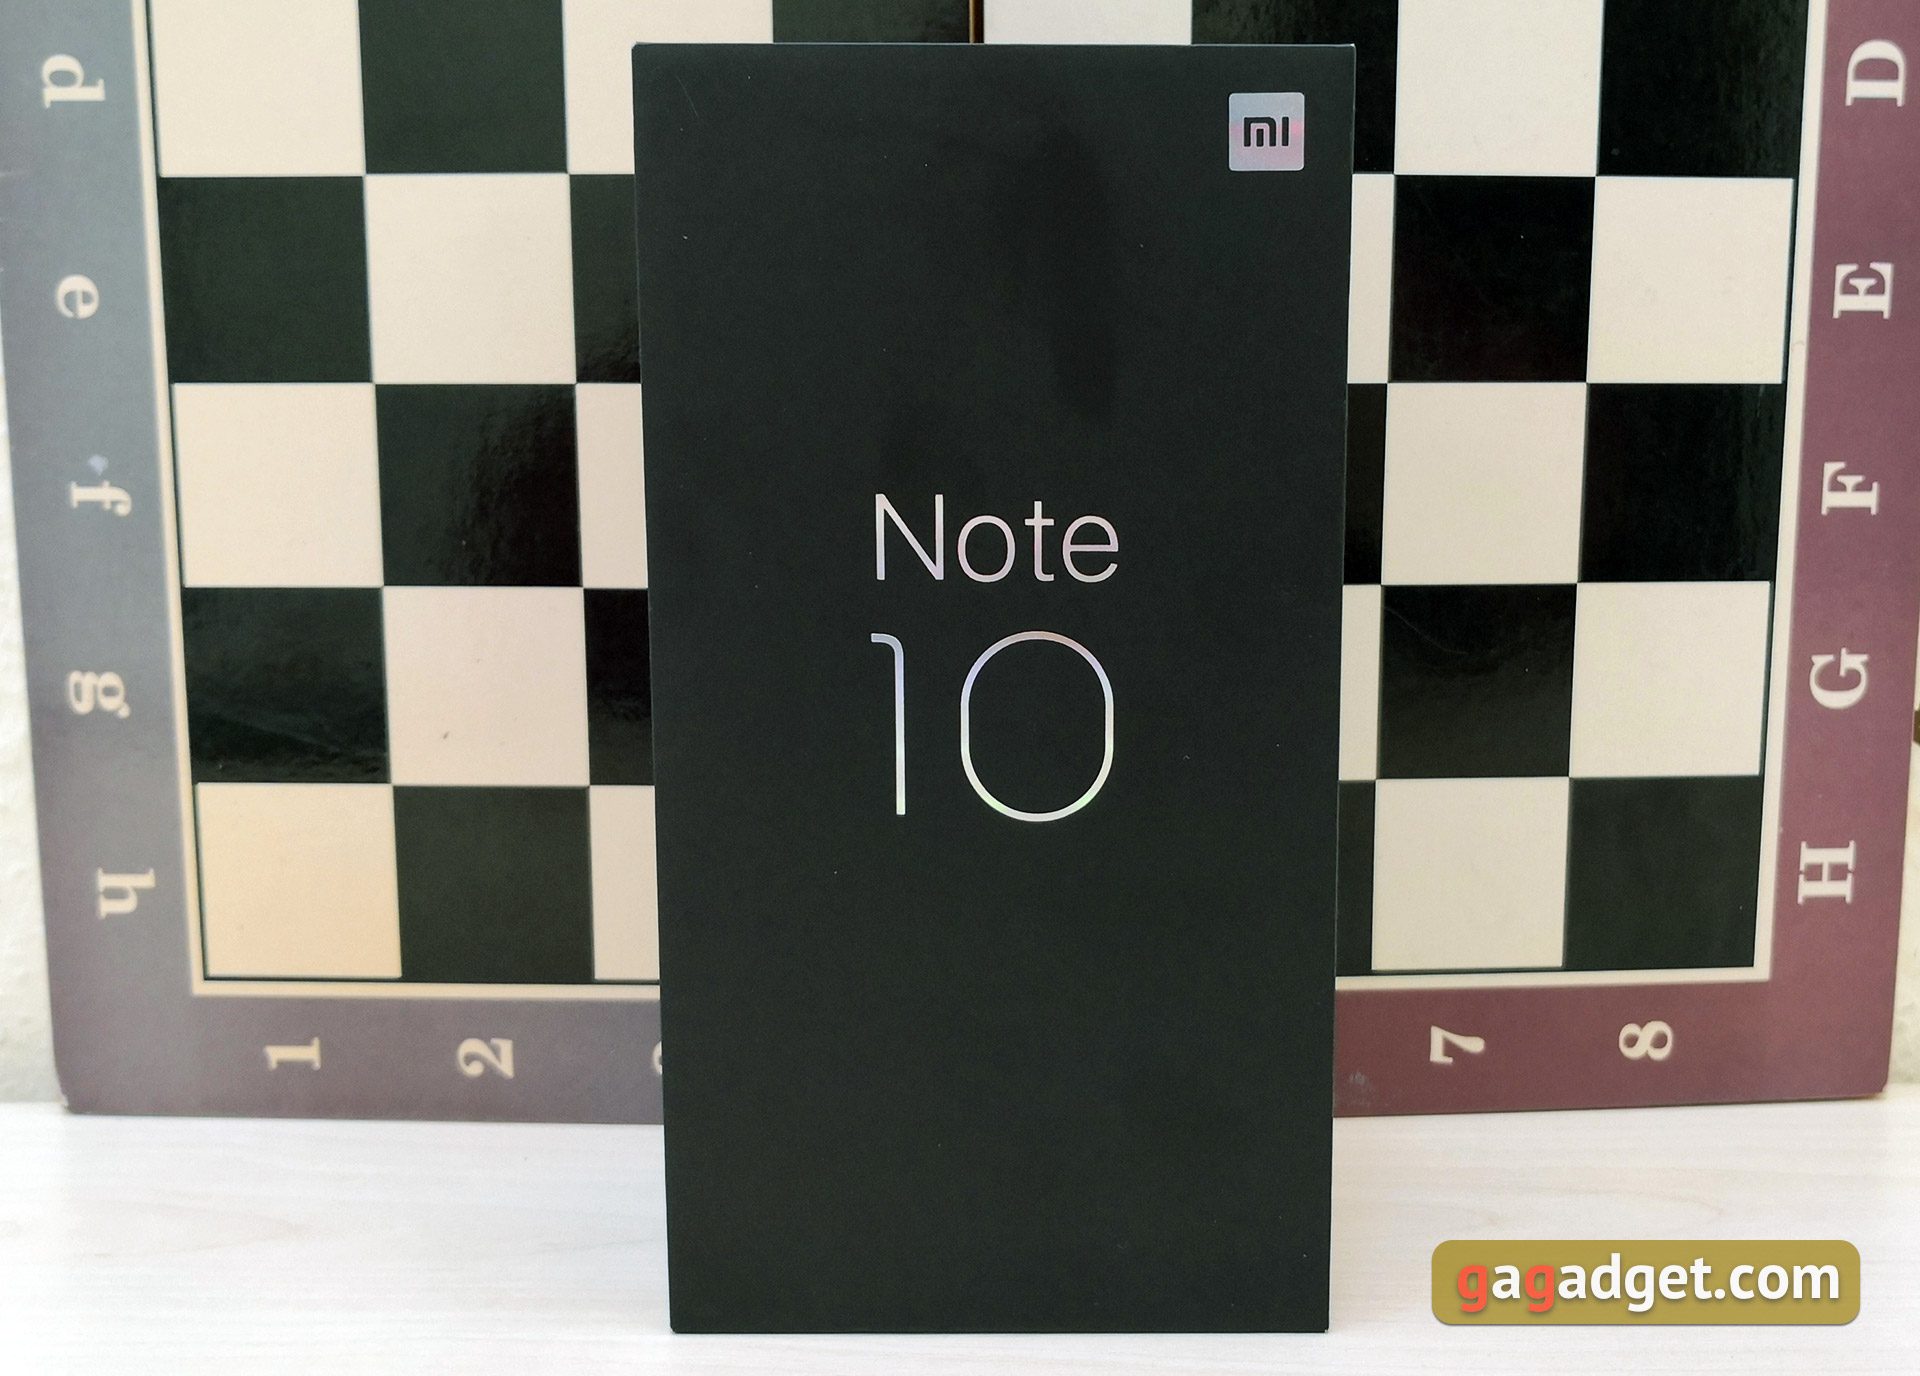 Recenzja Xiaomi Mi Note 10: pierwszy na świecie smartfon z pentakamerą o rozdzielczości 108 megapikseli-3